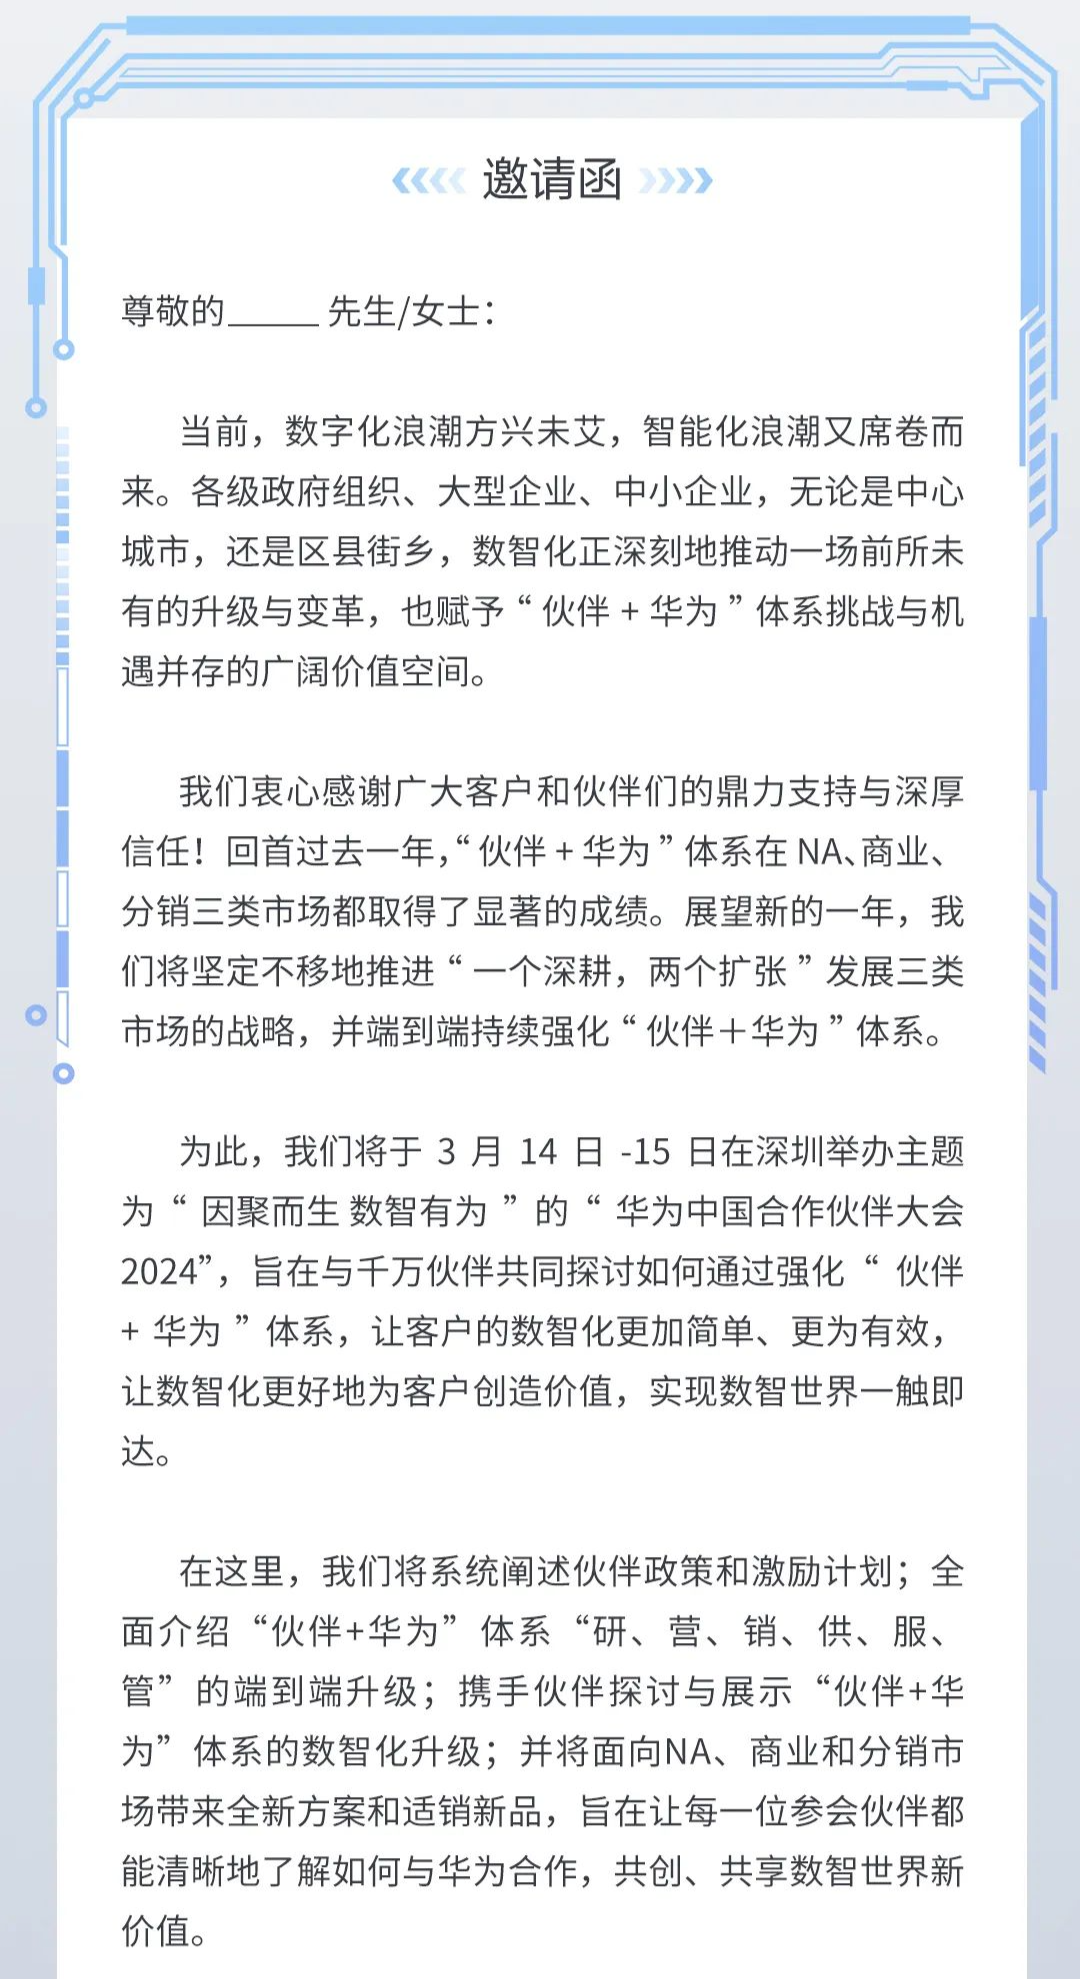 华为中国合作伙伴大会 2024 官宣 3 月 14-15 日举行，“众志”变“数智”